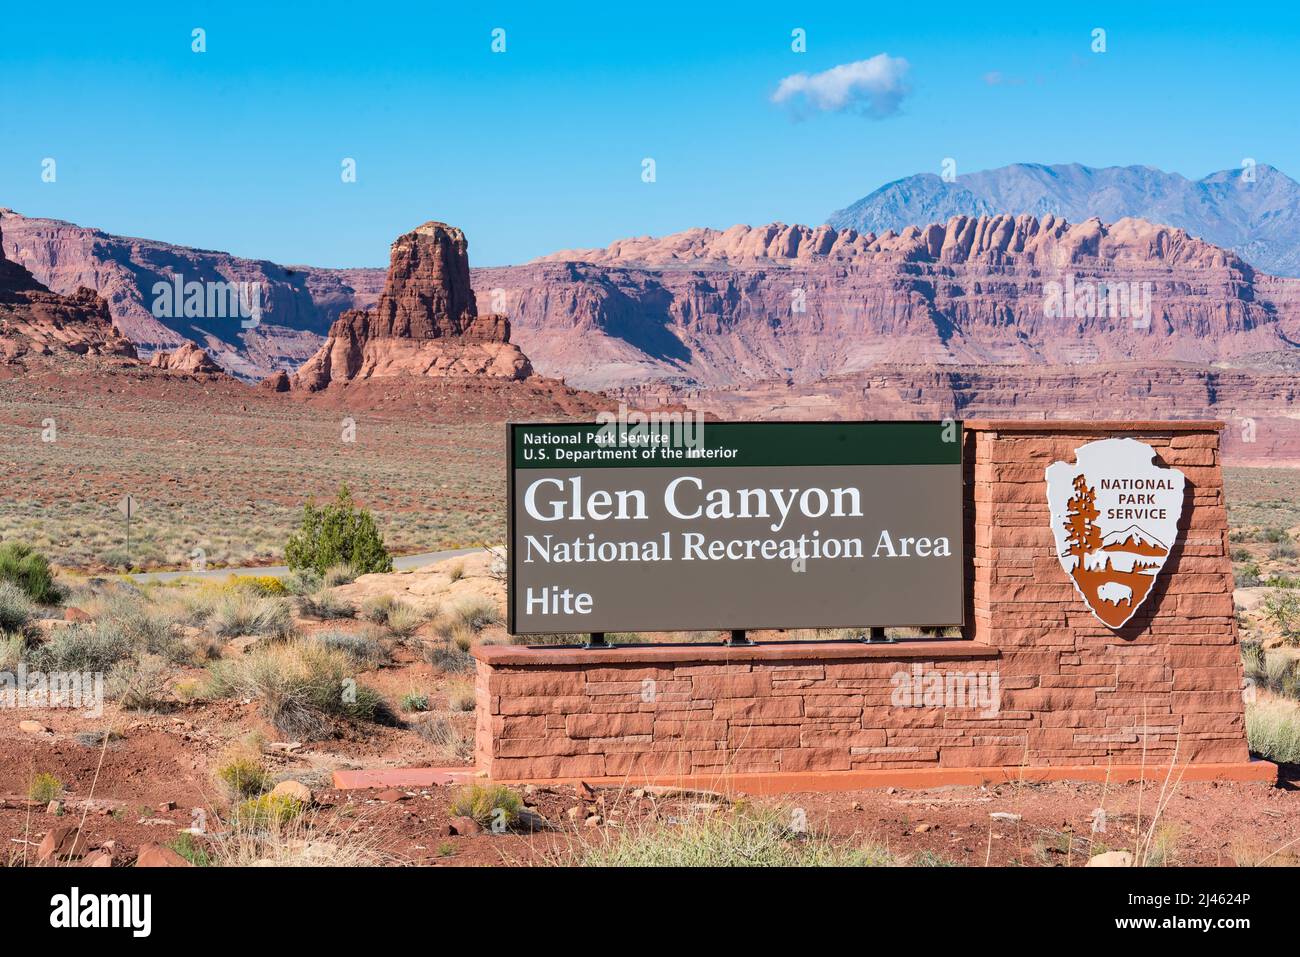 Hite, UT - October 9, 2021: Hite entrance sign to Glen Canyon National Recreation Area in the desert southwest of Utah Stock Photo